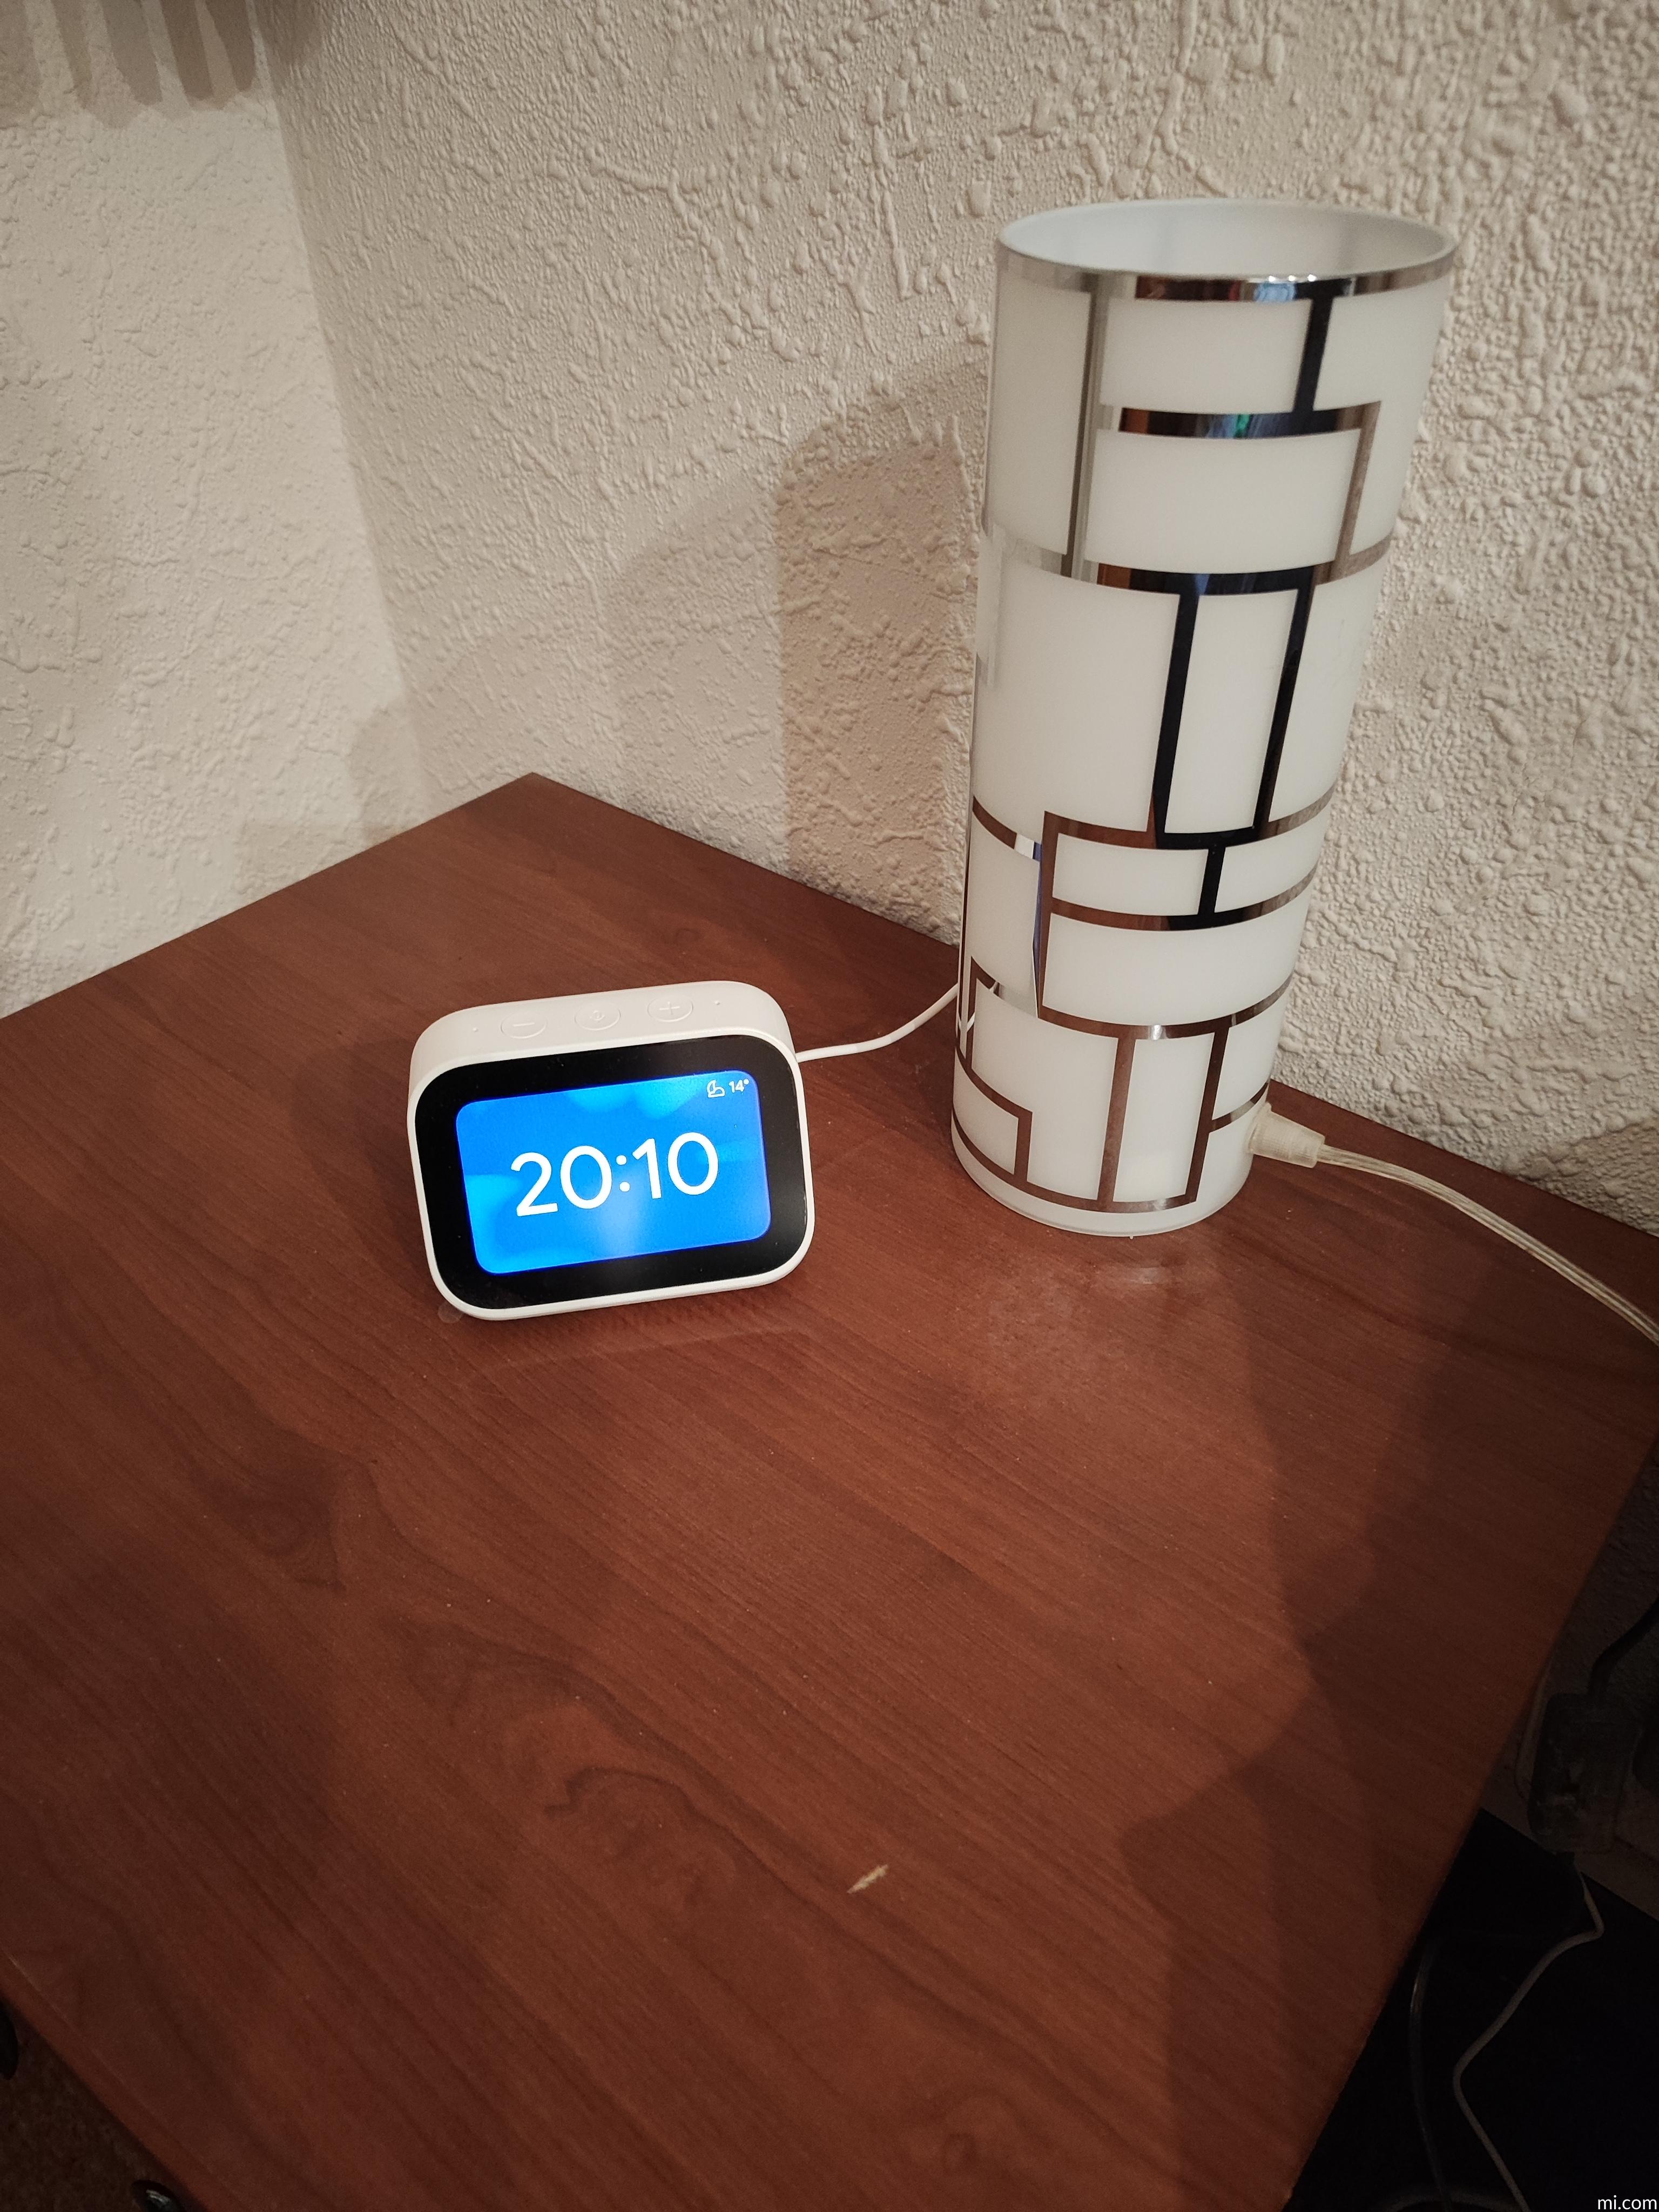 Xiaomi Mi Smart Clock – Reloj Despertador Inteligente, Envío 48/72 horas